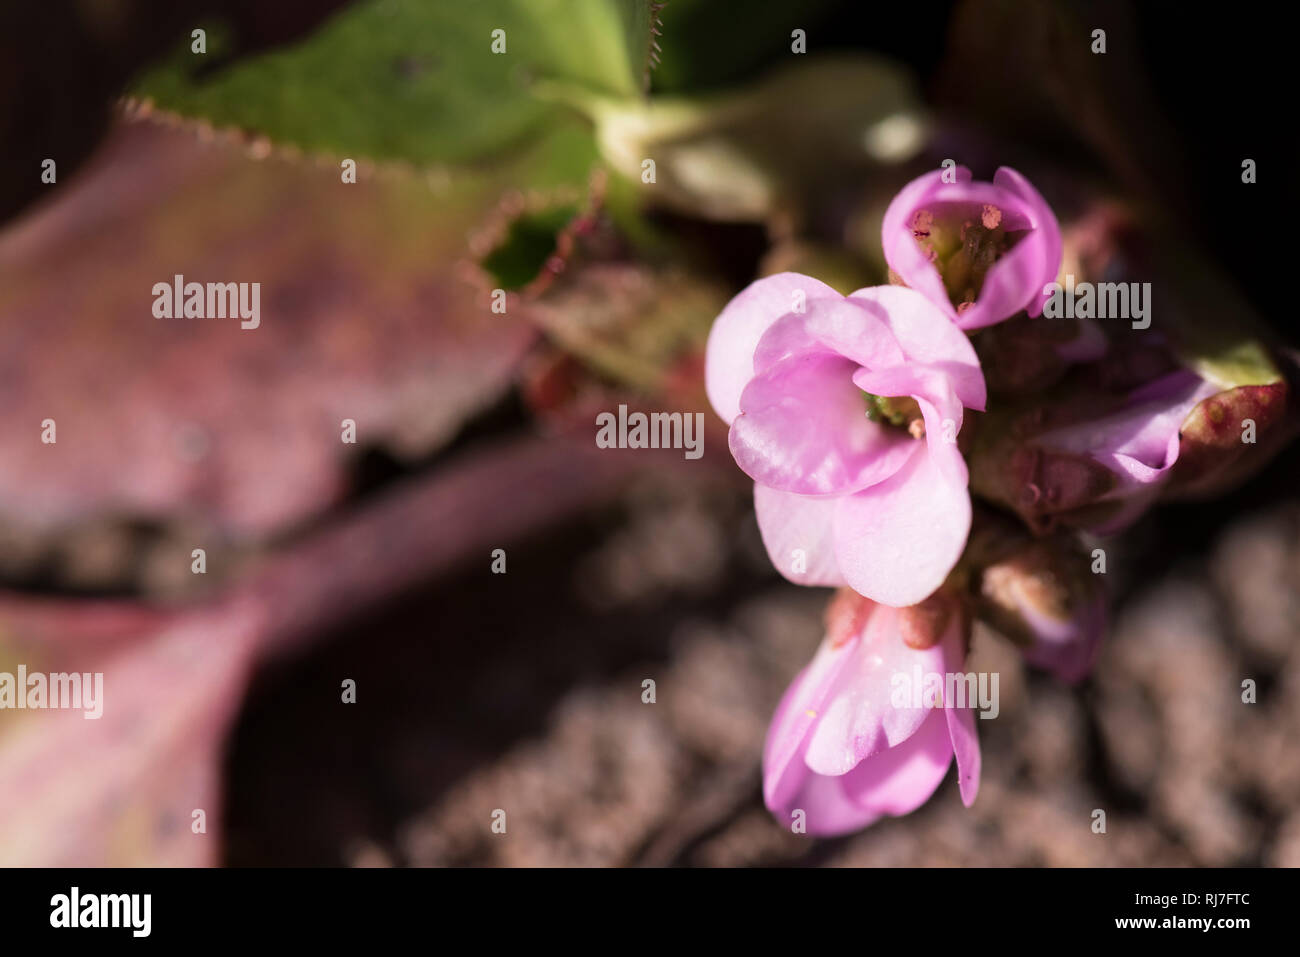 Frühblüher in der Natur, Zierrhabarber Blüten, close-up Stock Photo